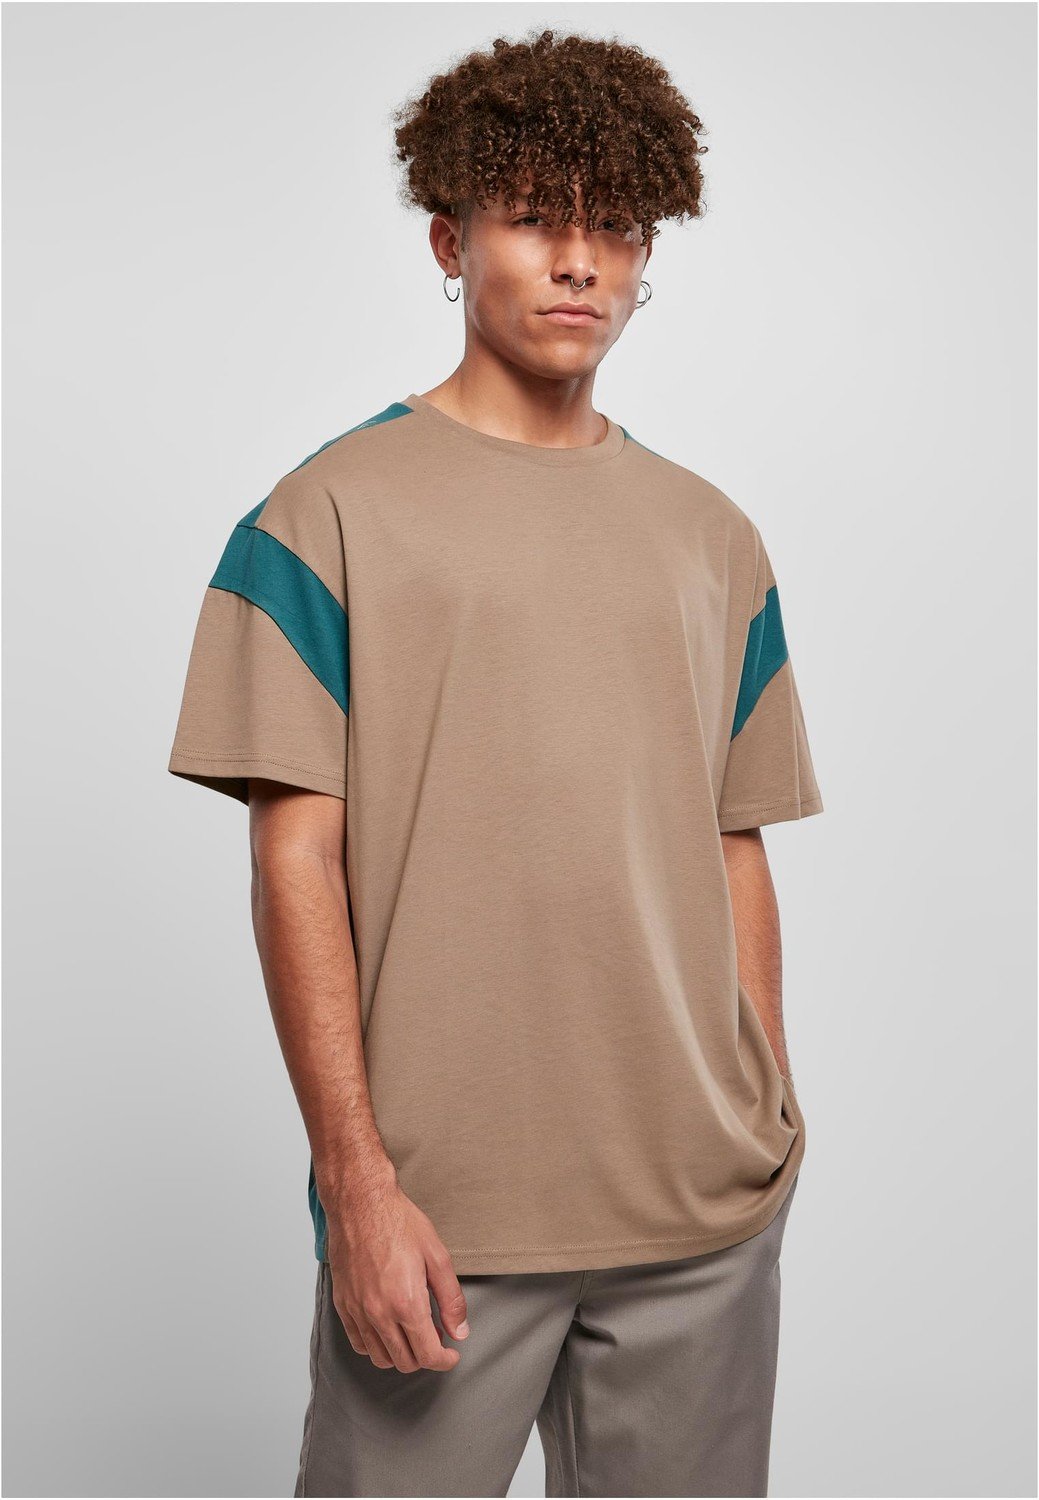 Aktivní tričko tmavě khaki/zelenozelená